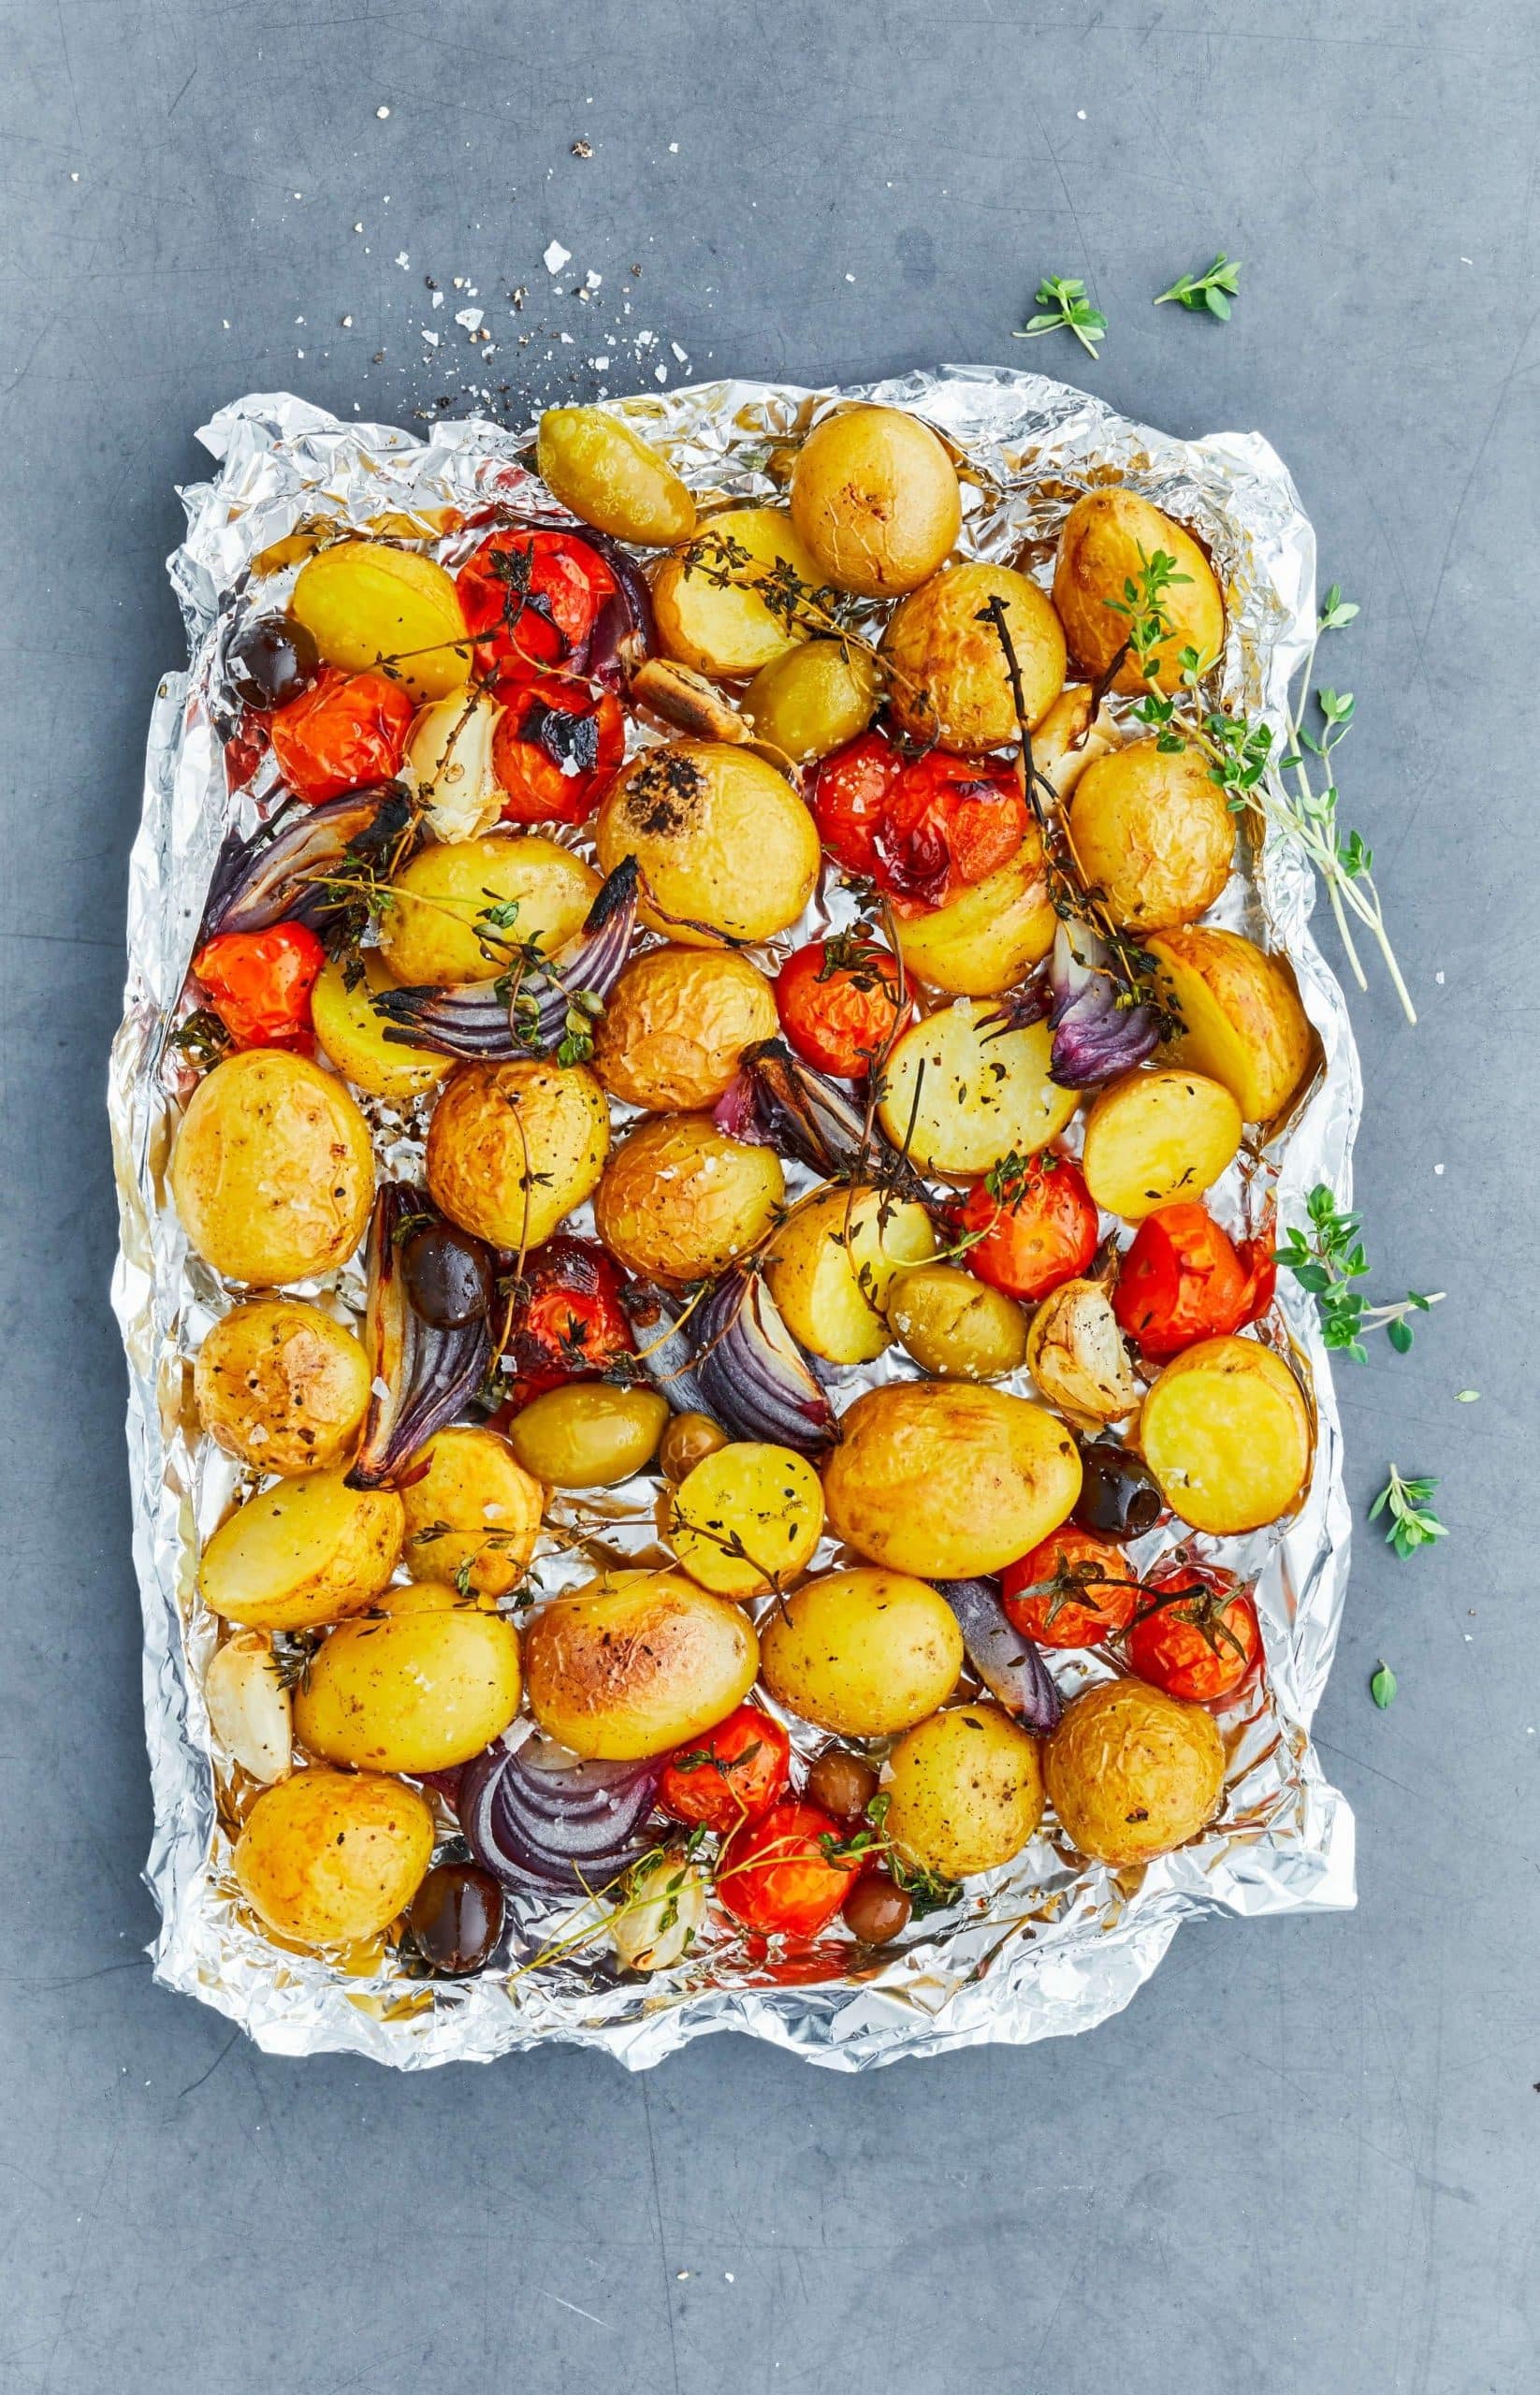 Magtfulde blik tro Nye bagte kartofler med tomater og urter | Flensted.dk